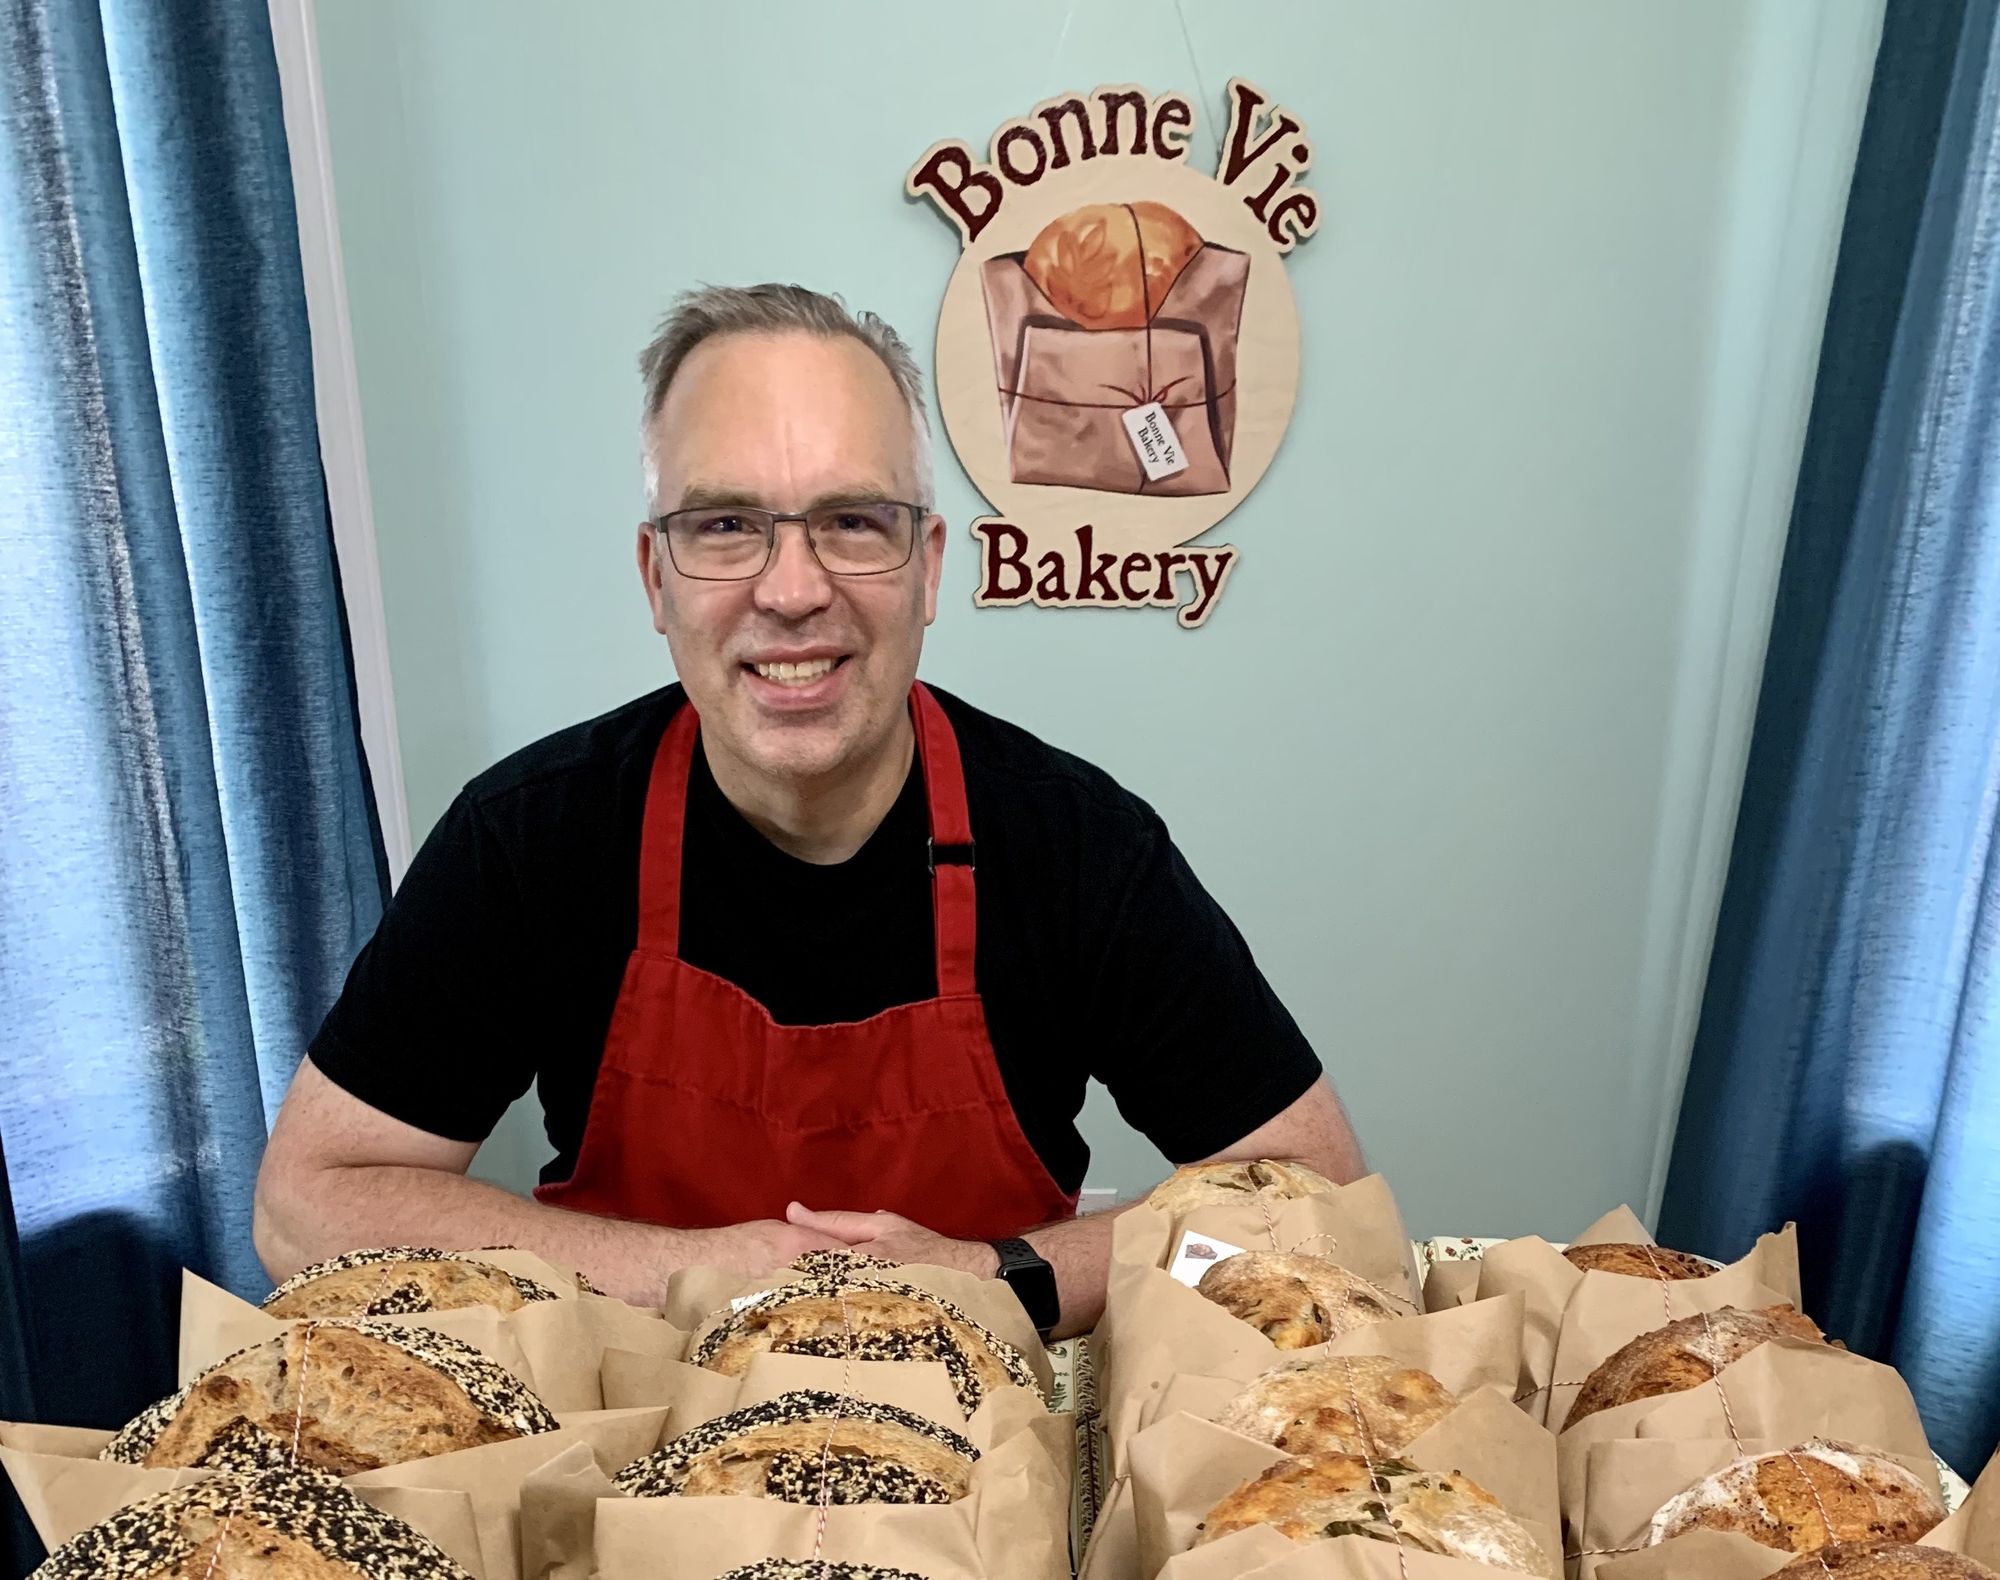 Edmonton Micro Bakery - Bonne Vie Bakery